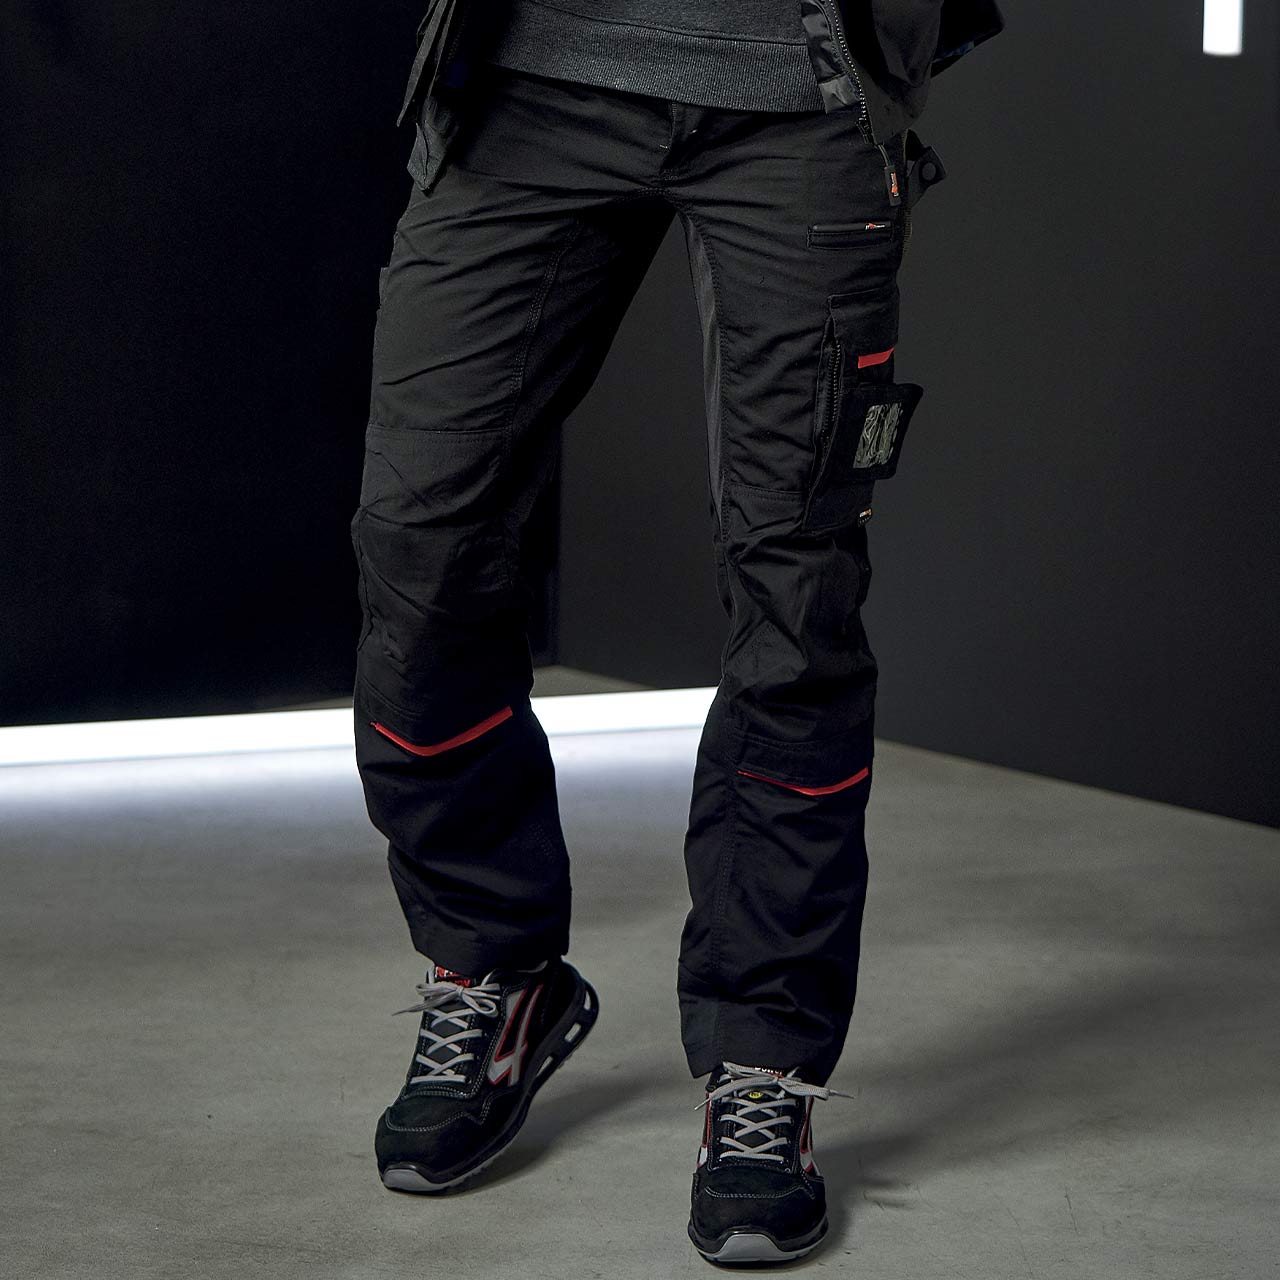 pantalone da lavoro upower modello race colore black carbon indossato fronte